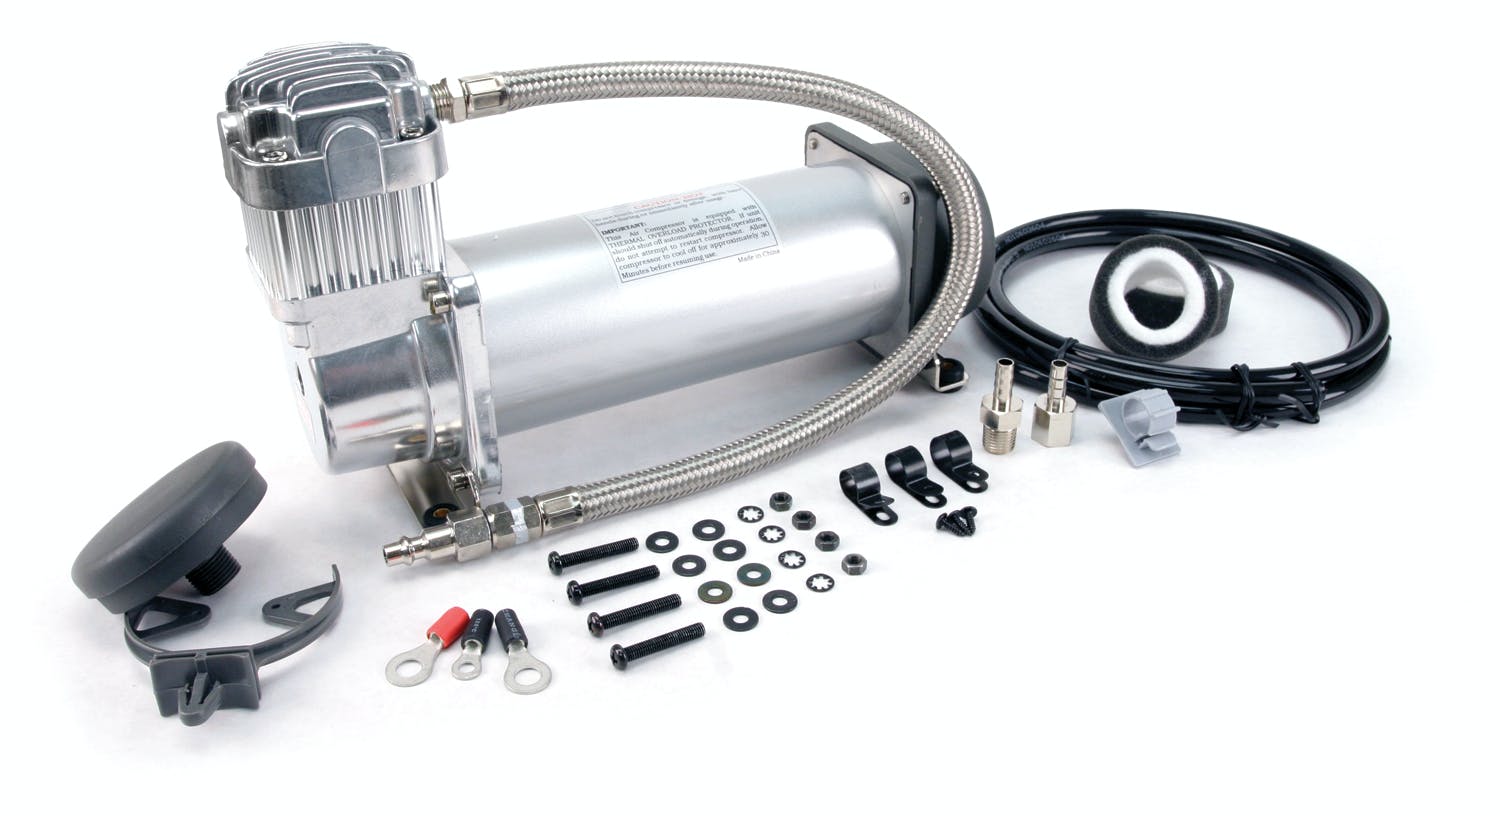 VIAIR 45042 450H Hardmount Compressor Kit 100% Duty  Sealed